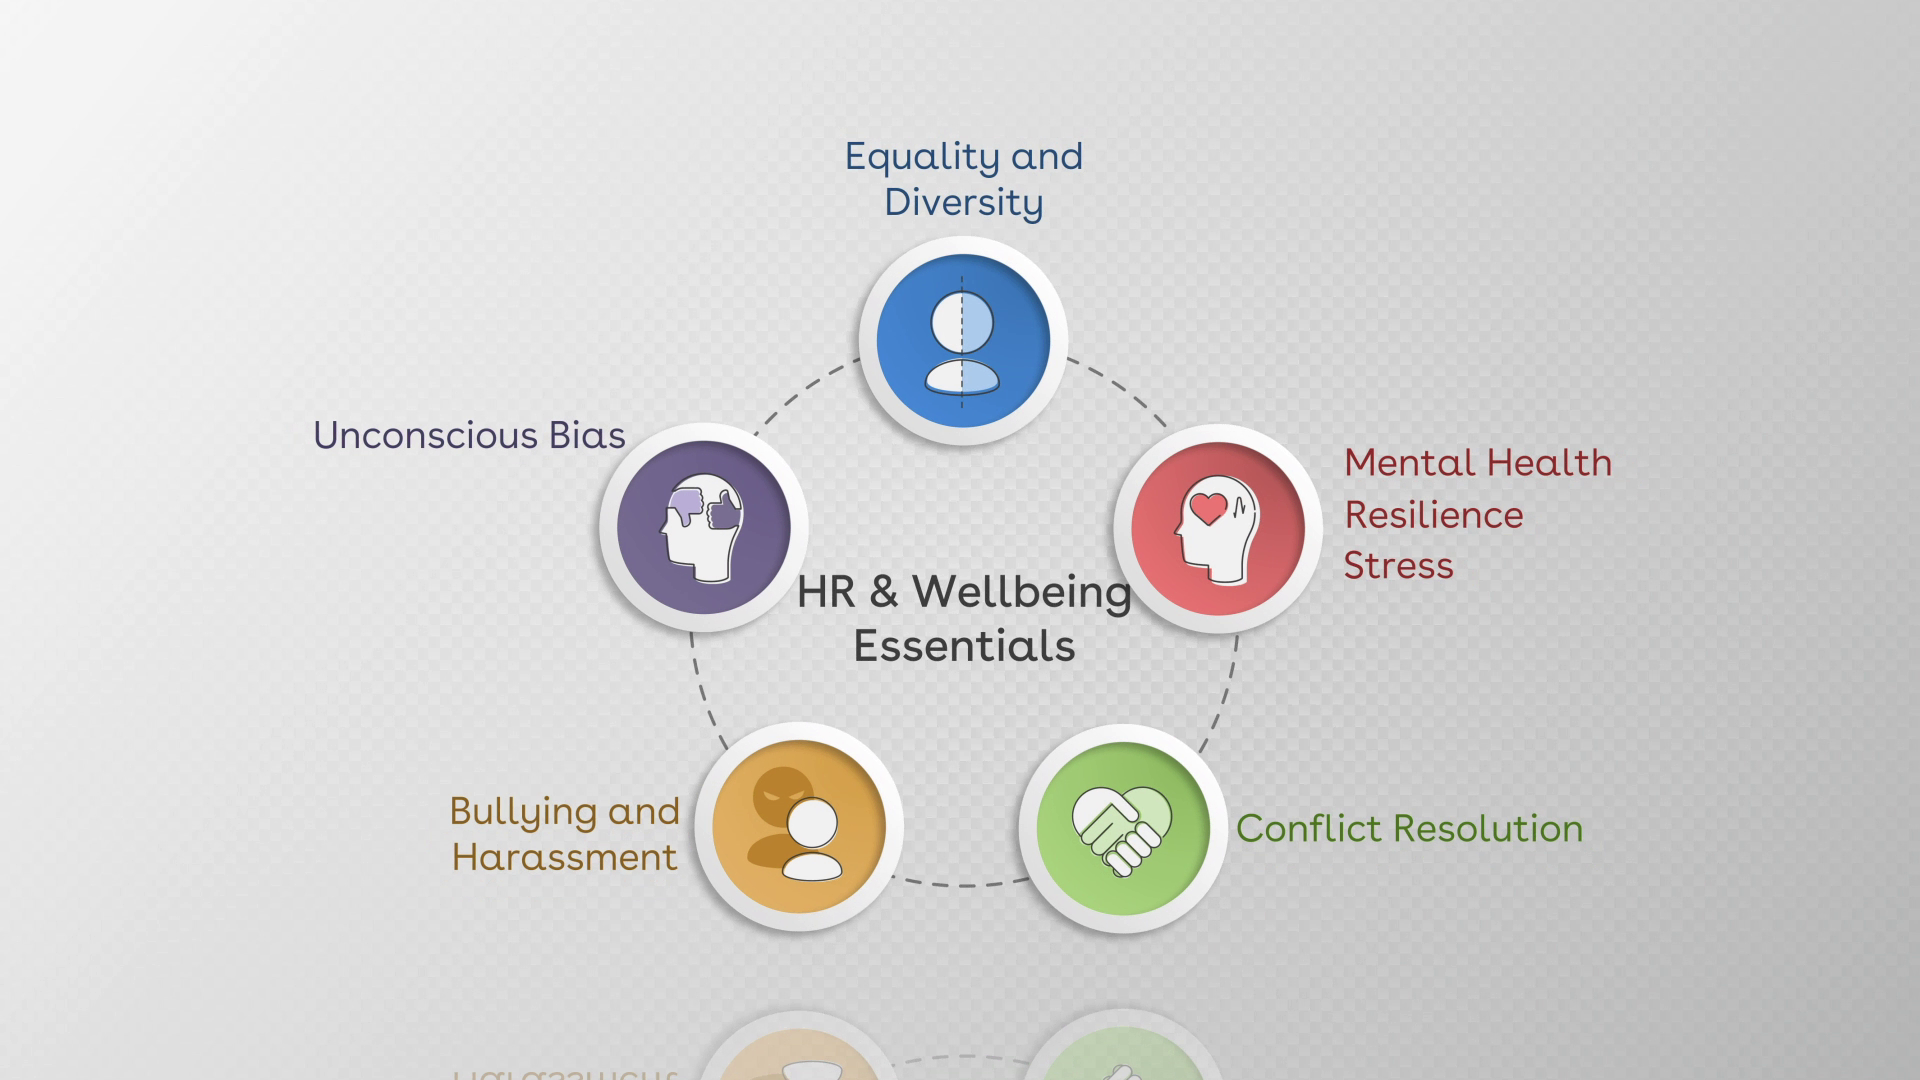 HR & Wellbeing